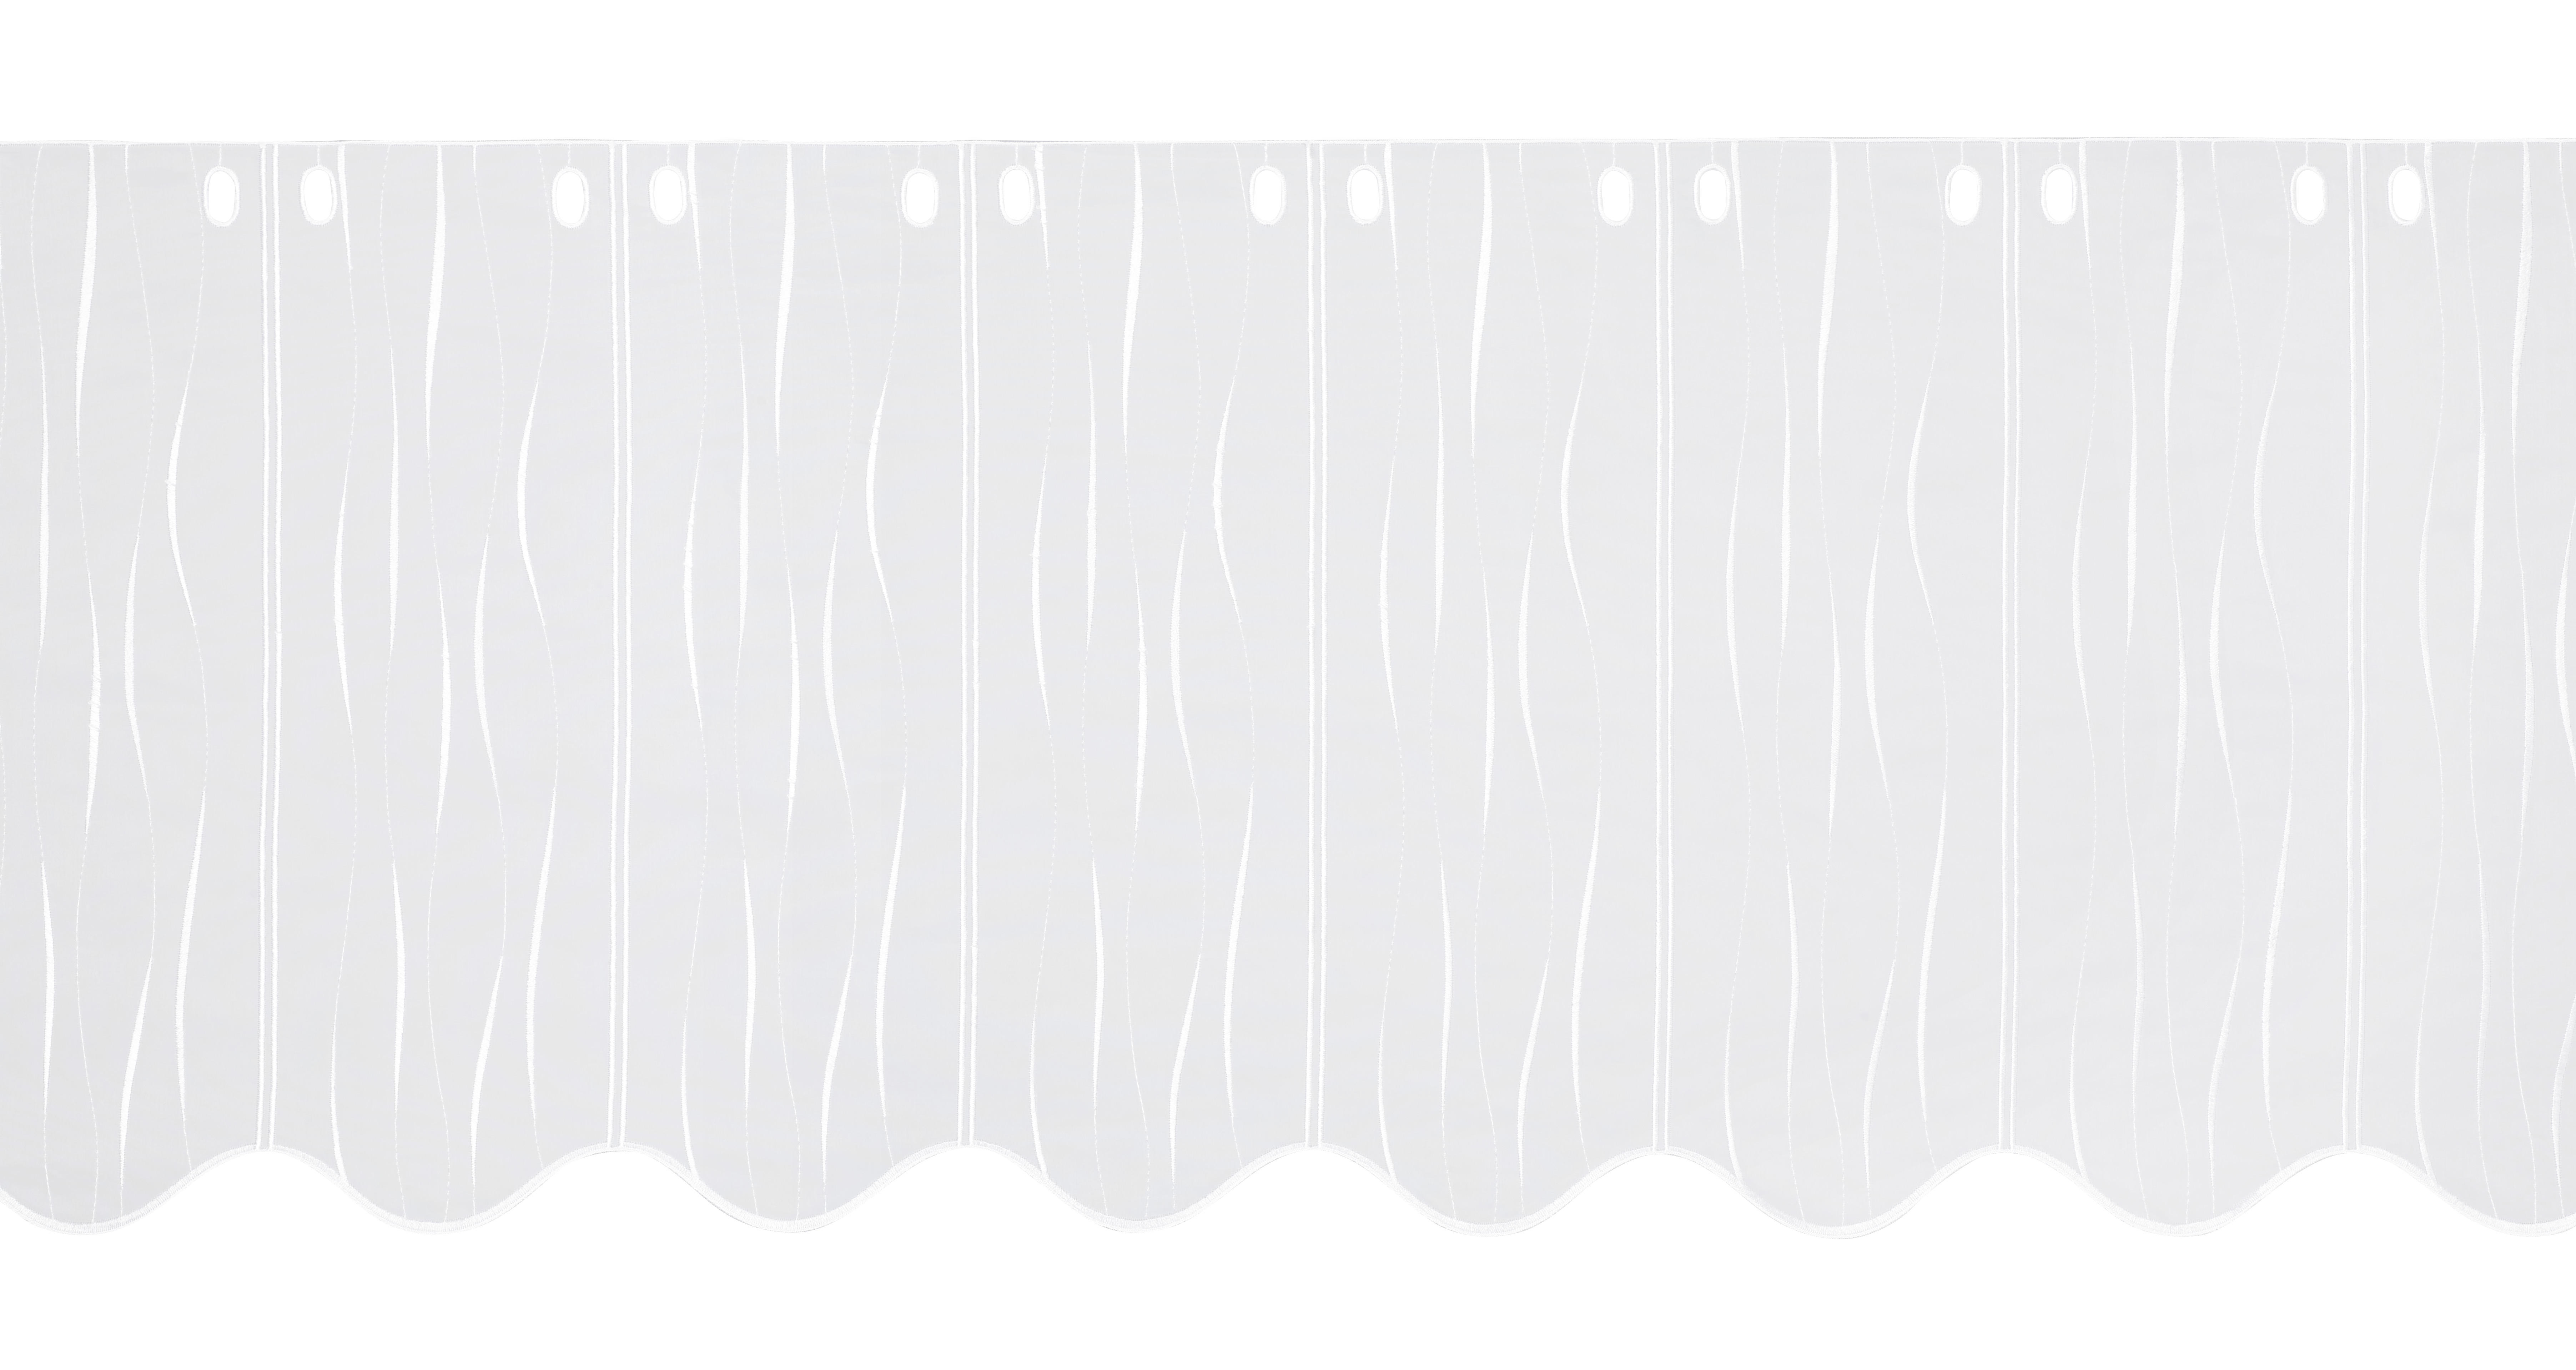 KURZGARDINE 50 cm   - Weiß, KONVENTIONELL, Textil (50cm) - Esposa